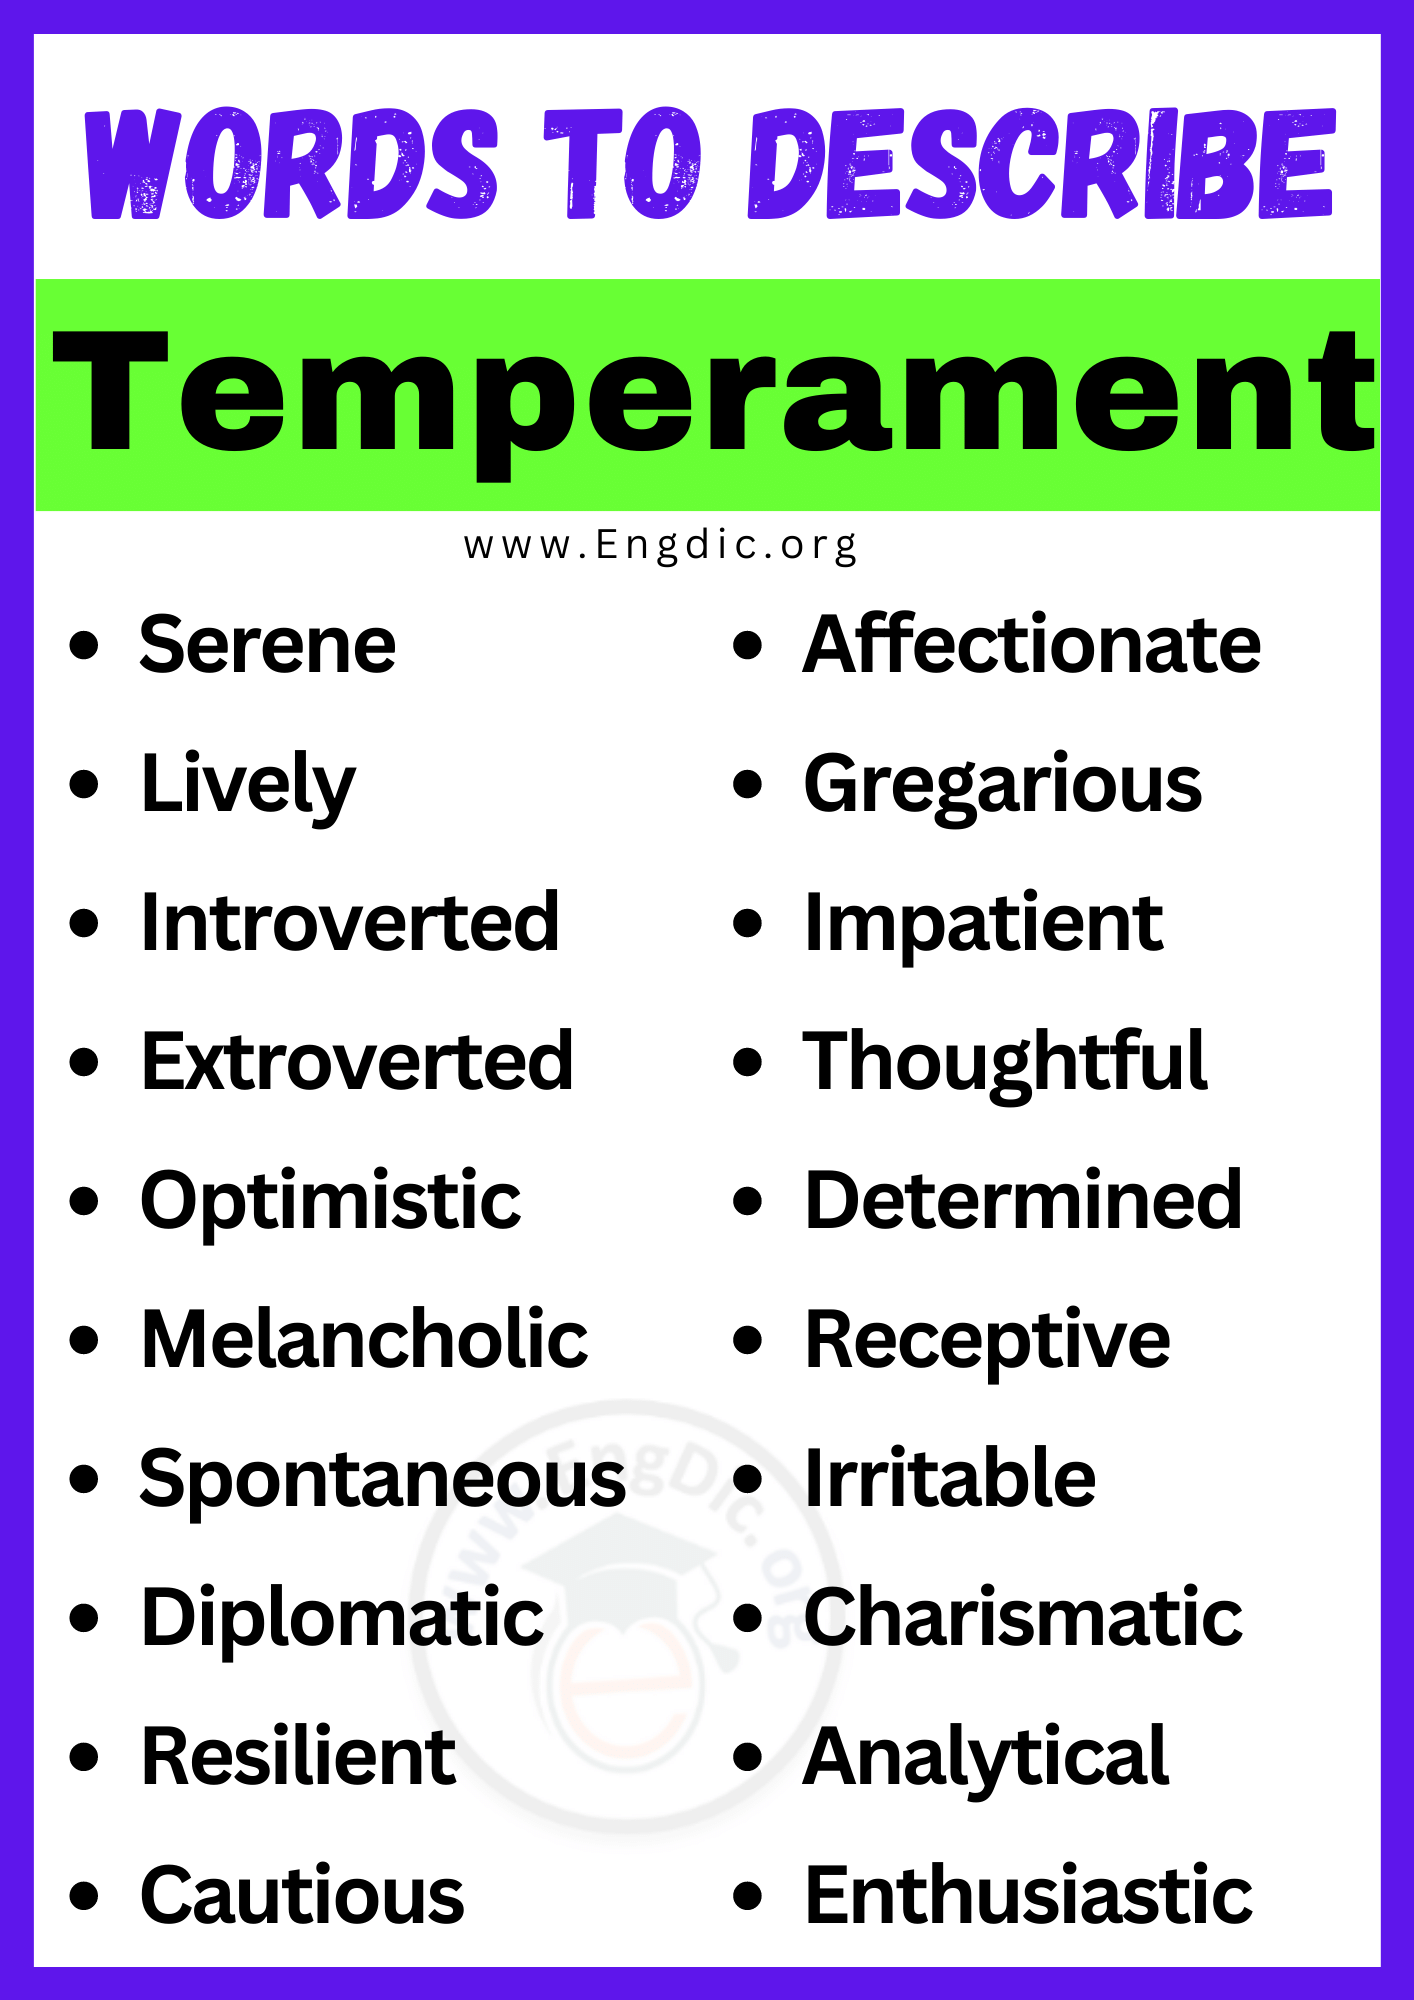 Words to Describe Temperament